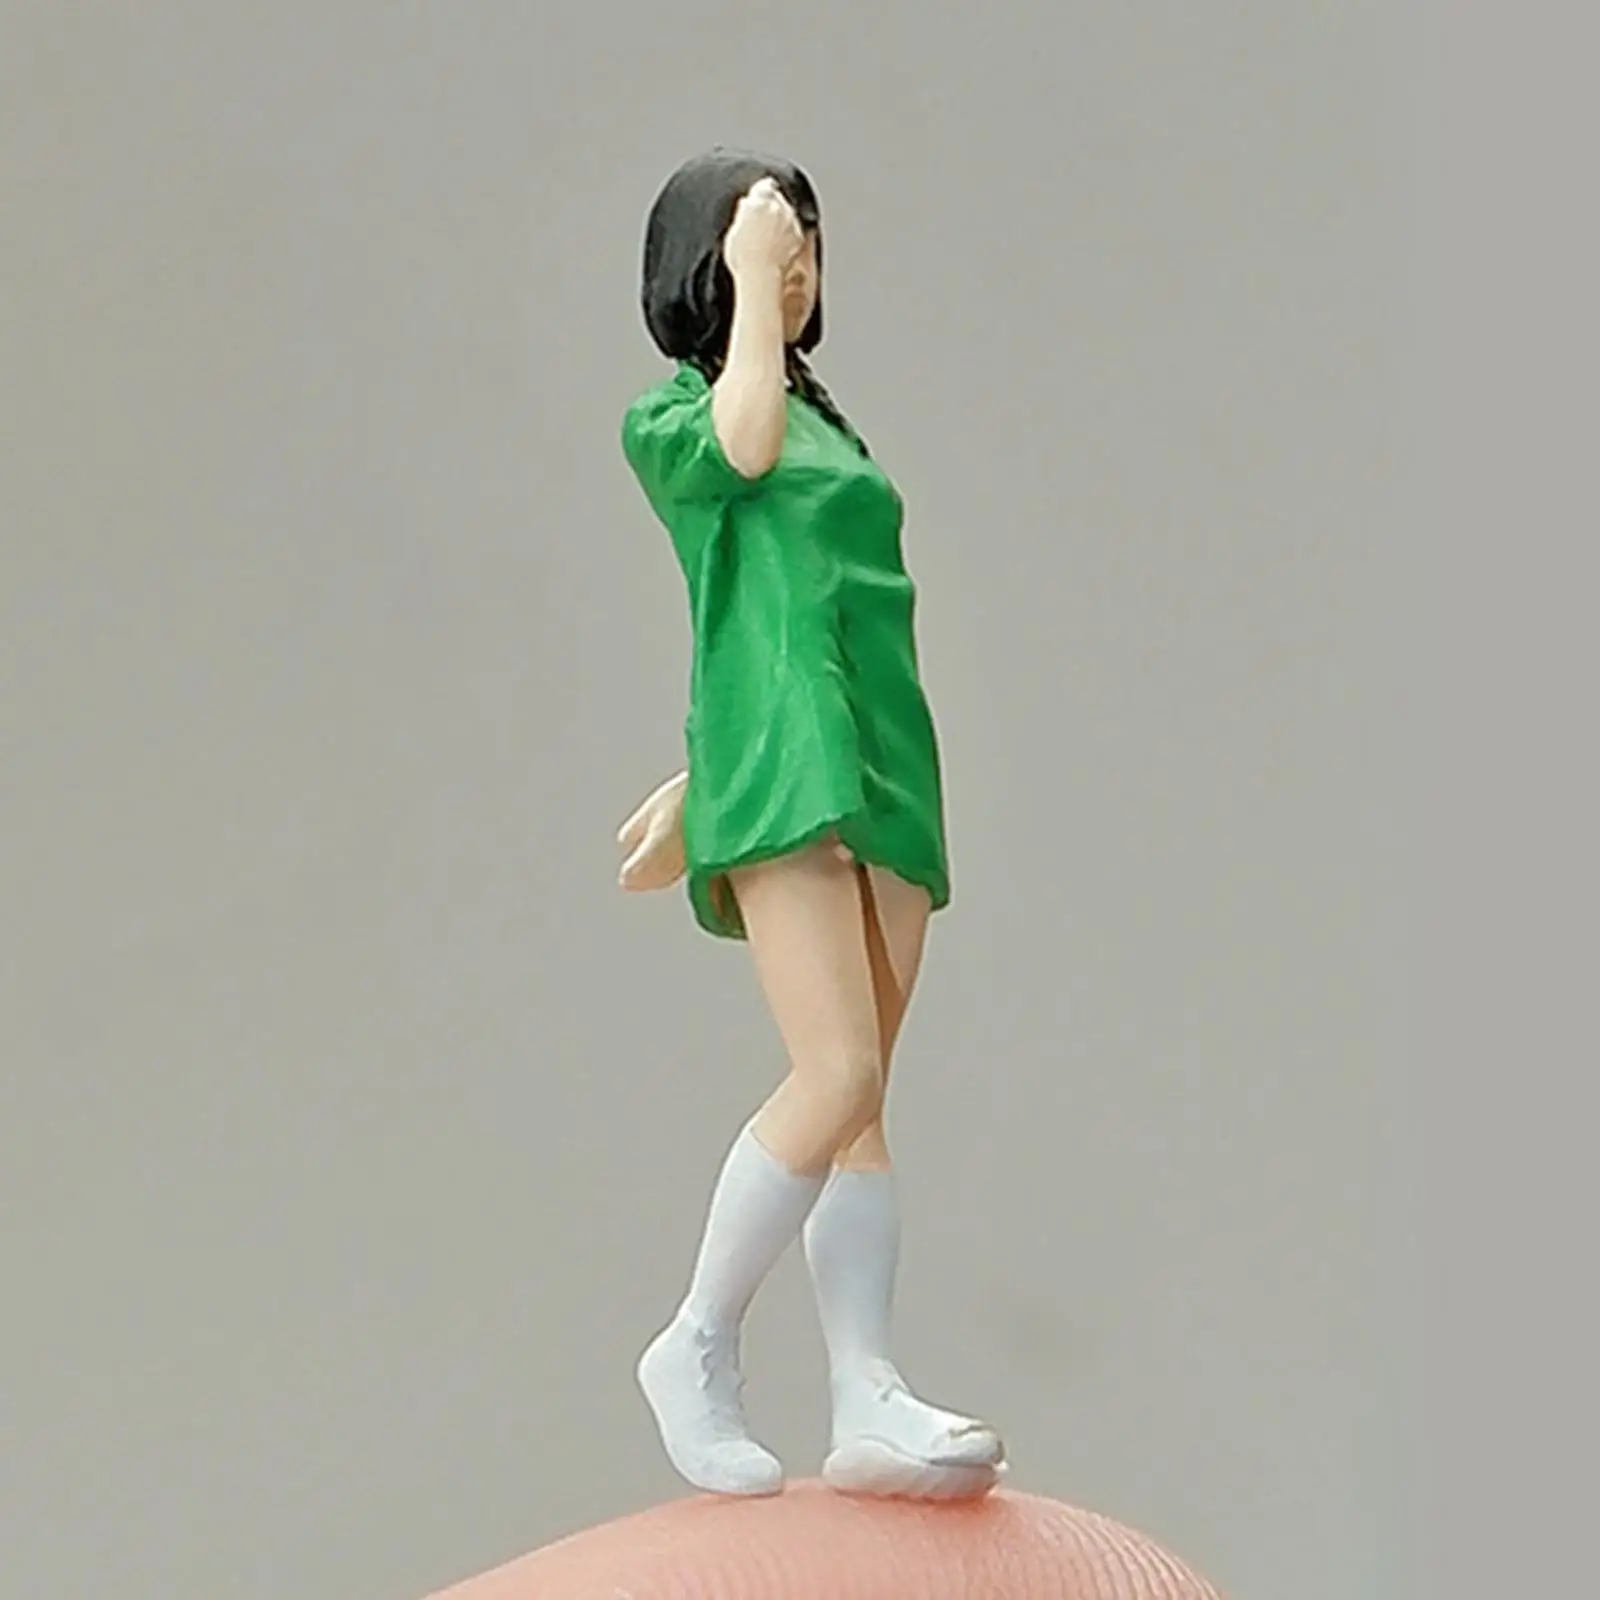 1/64 Scale Diorama Figure Resin Pretty Girl for Fariy Garden Photo Props Desktop Ornament Micro Landscape Dollhouse Accessories